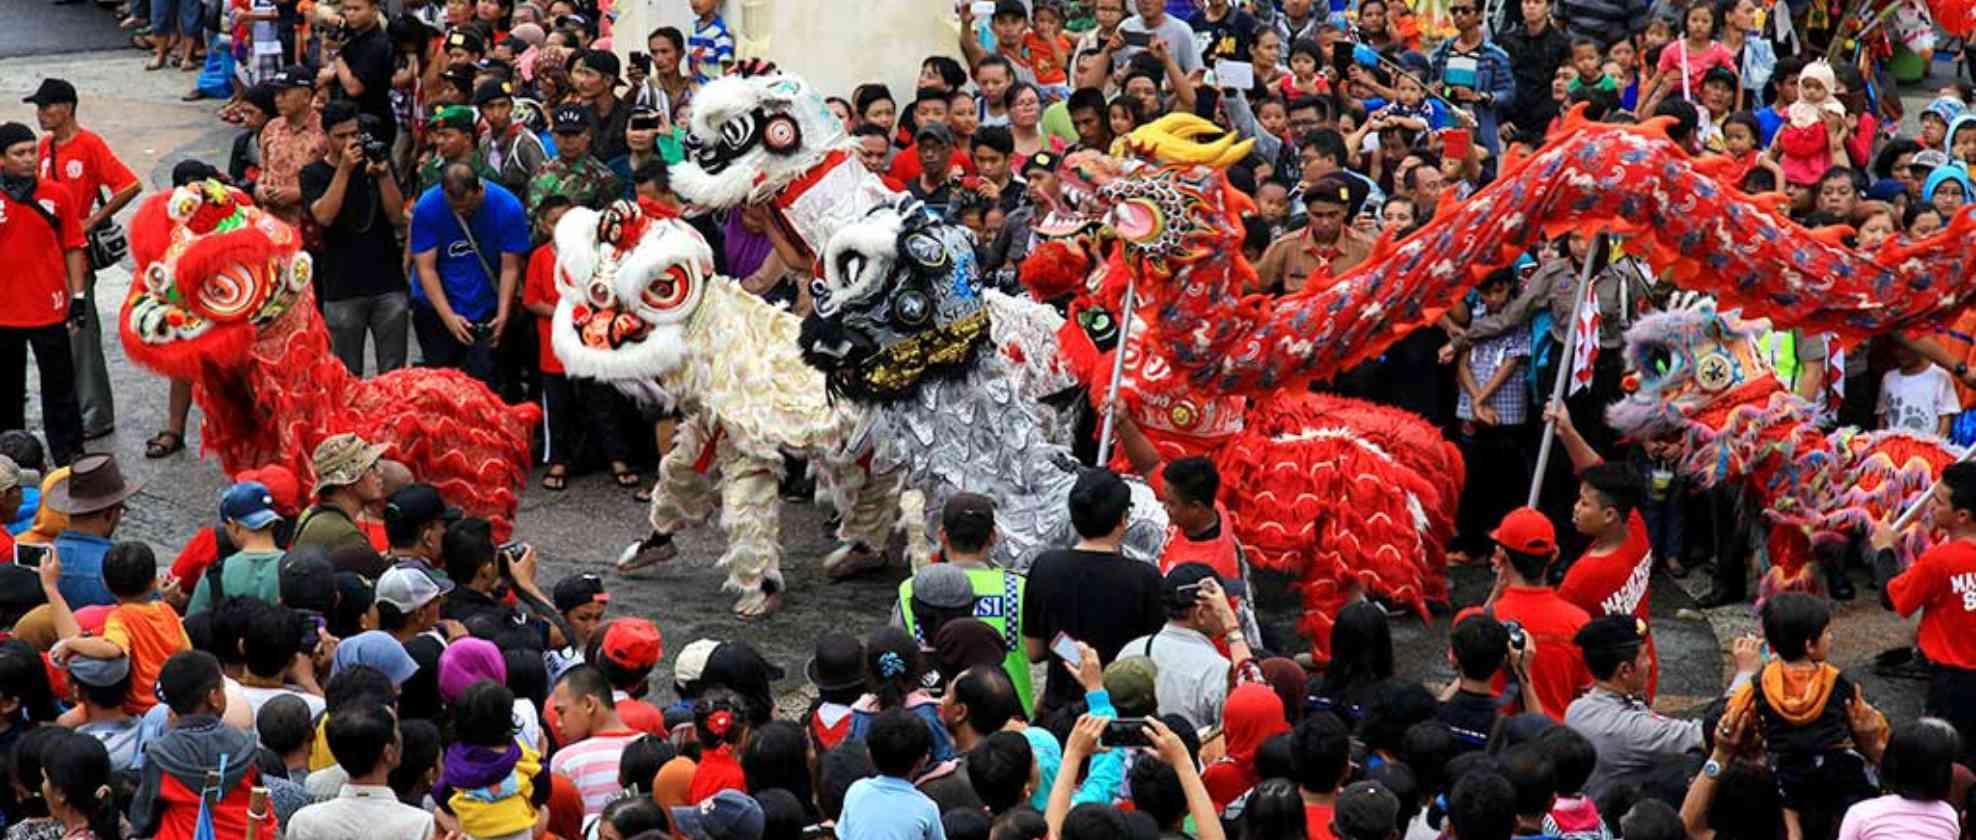 09 Kota-Kota di Indonesia Dengan Perayaan Imlek Yang Unik.jpg